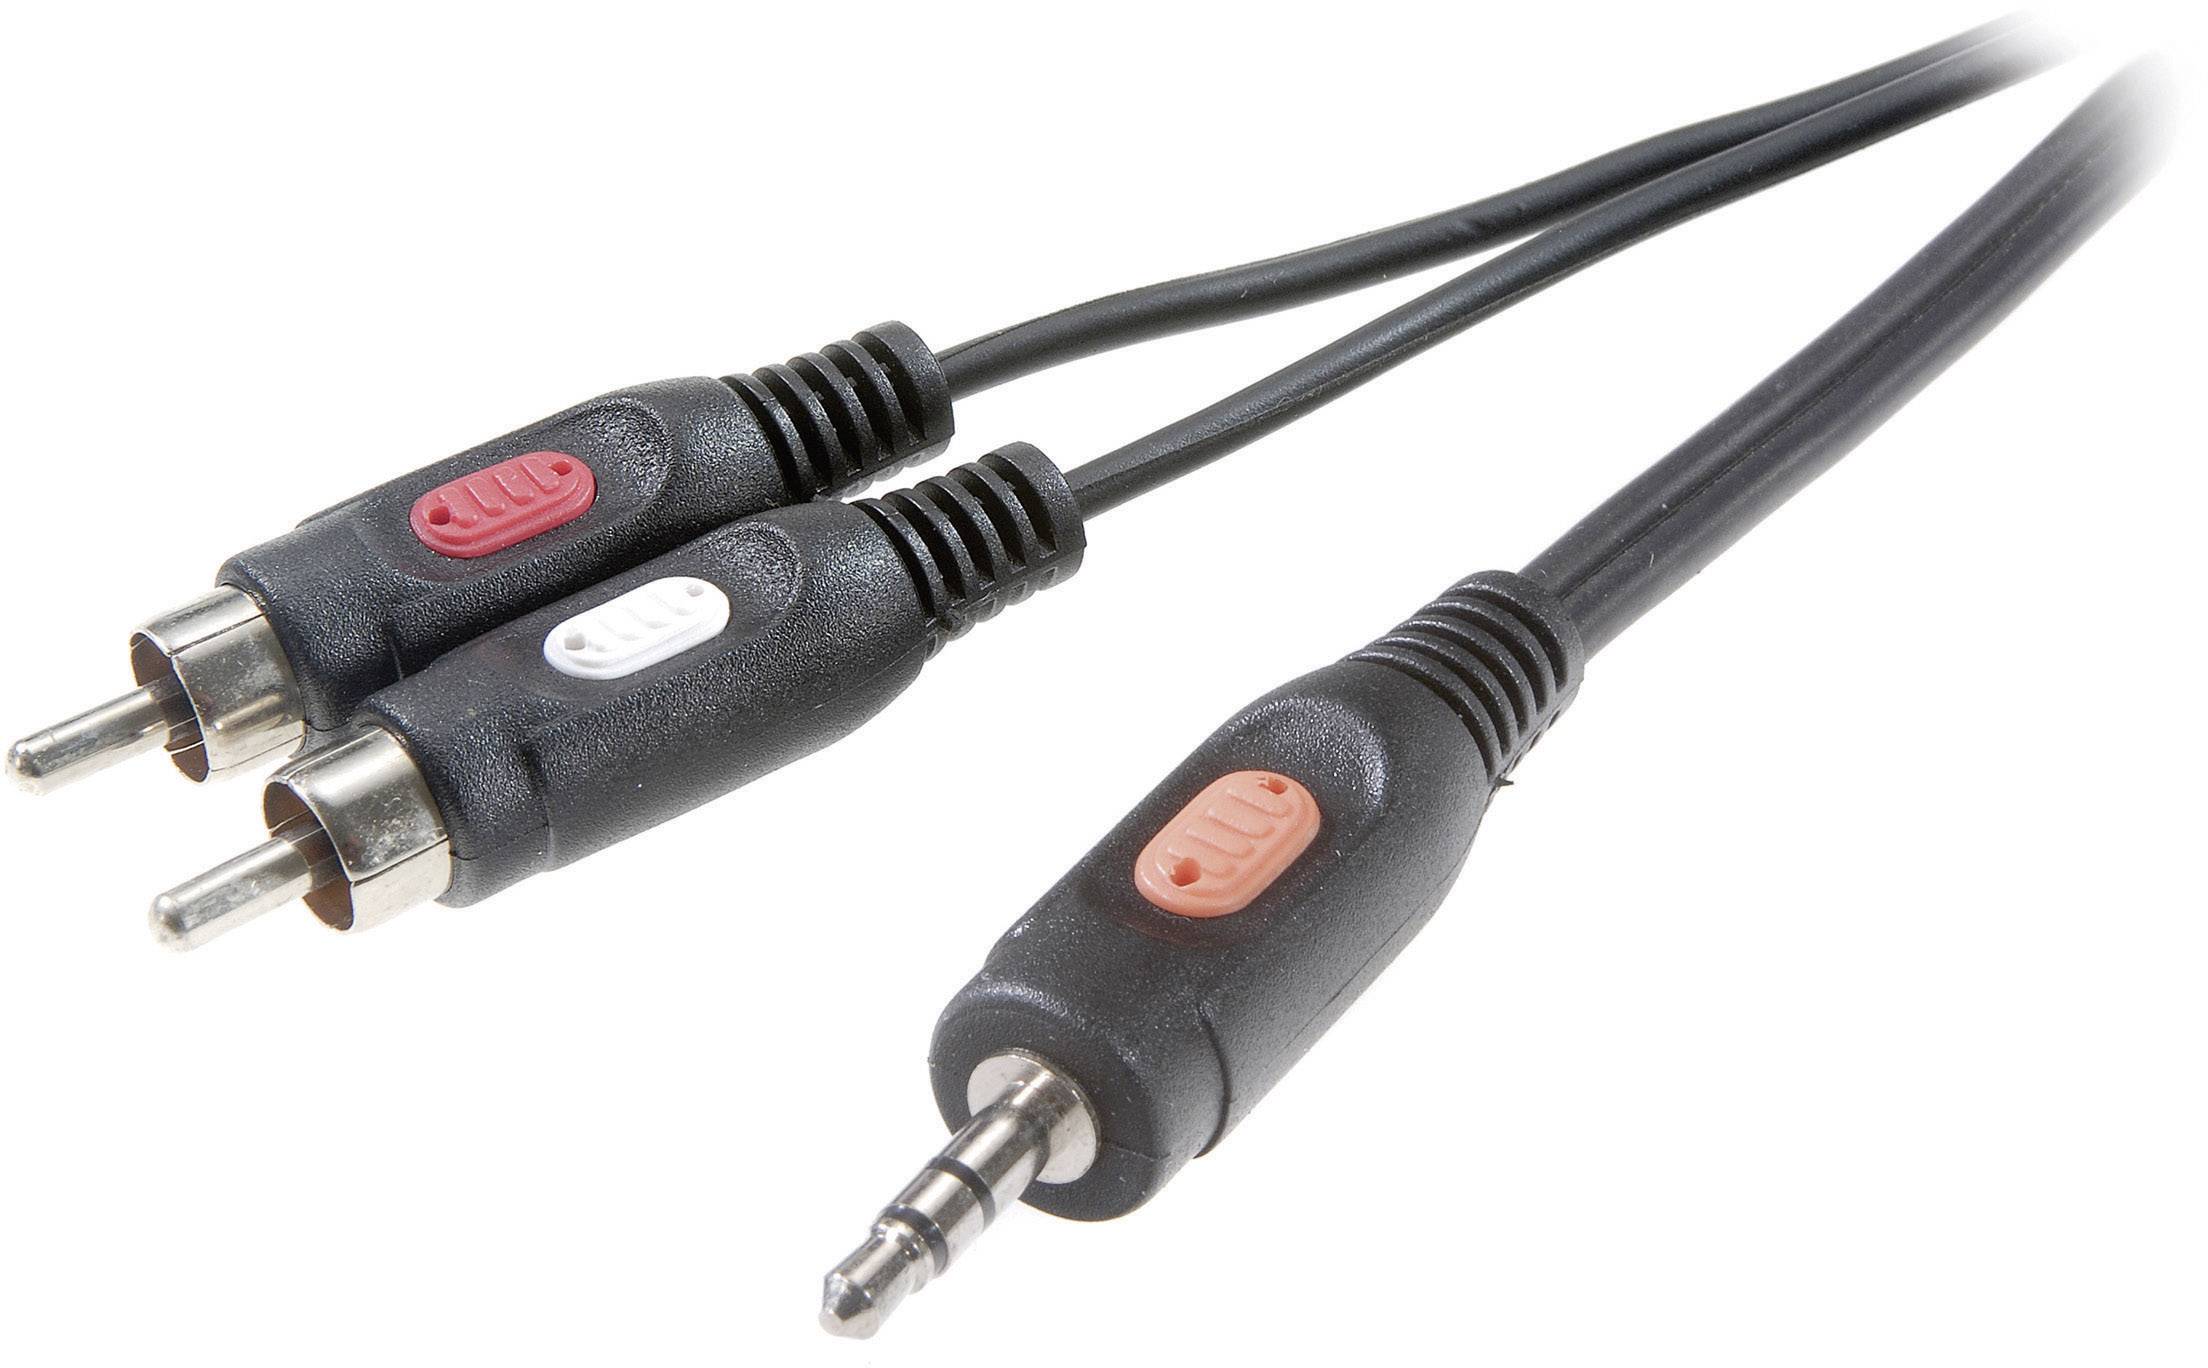 CONRAD SpeaKa Professional Cinch / Klinke Audio Anschlusskabel [2x Cinch-Stecker - 1x Klinkenstecker